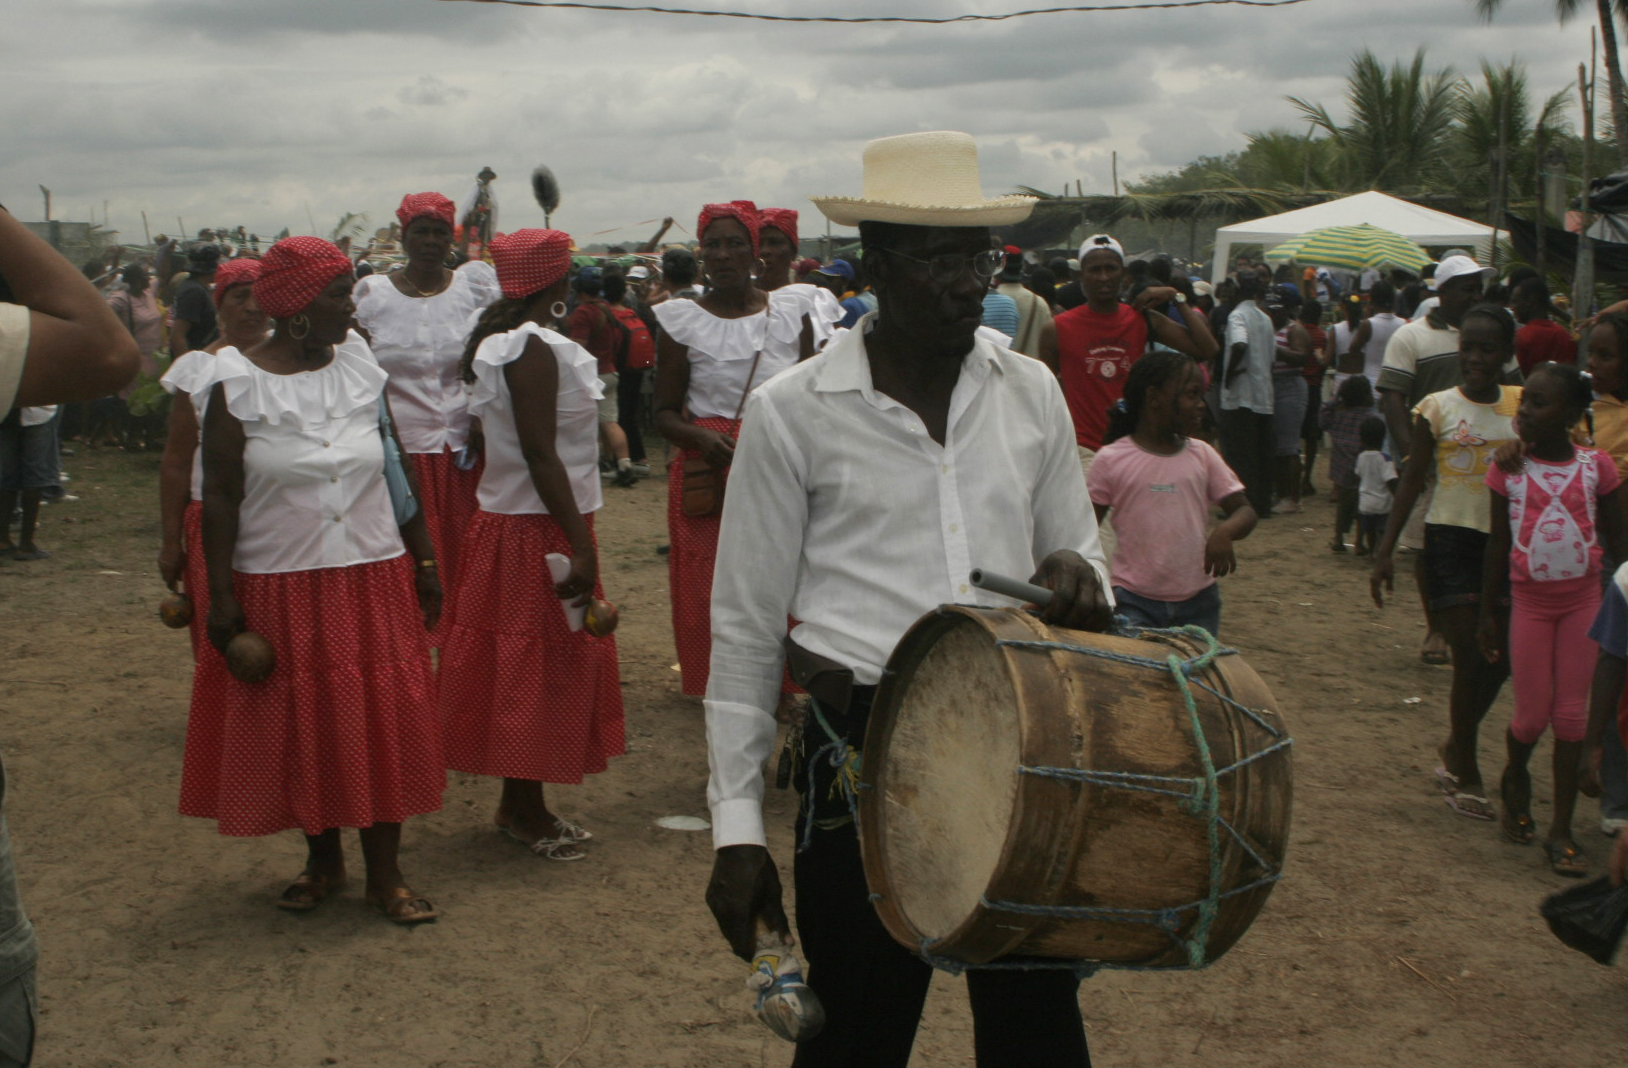 Procesión de San Martín. Toques y cantos en la procesión de San Martín. 